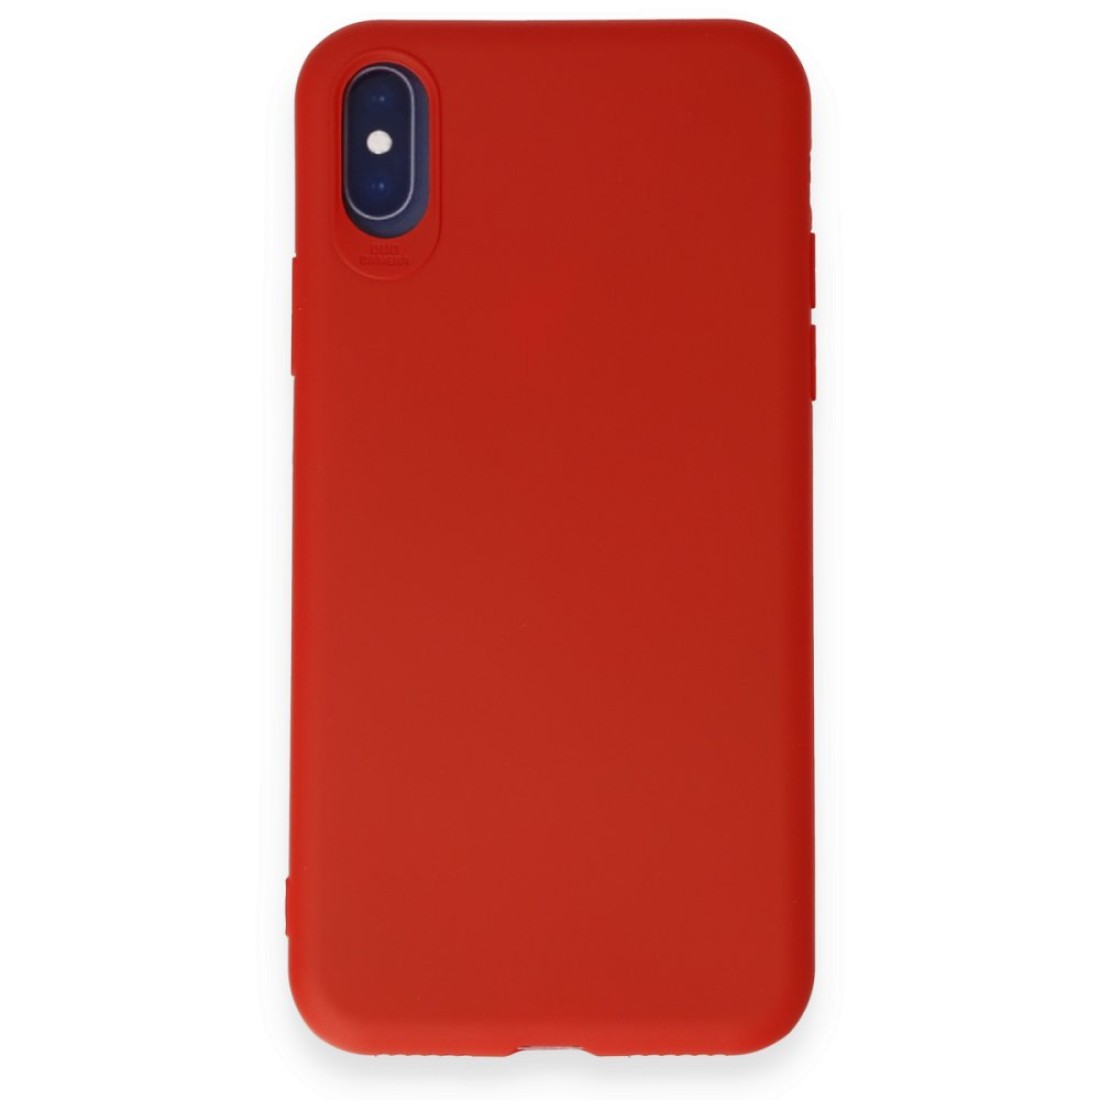 Apple iPhone XS Kılıf First Silikon - Kırmızı